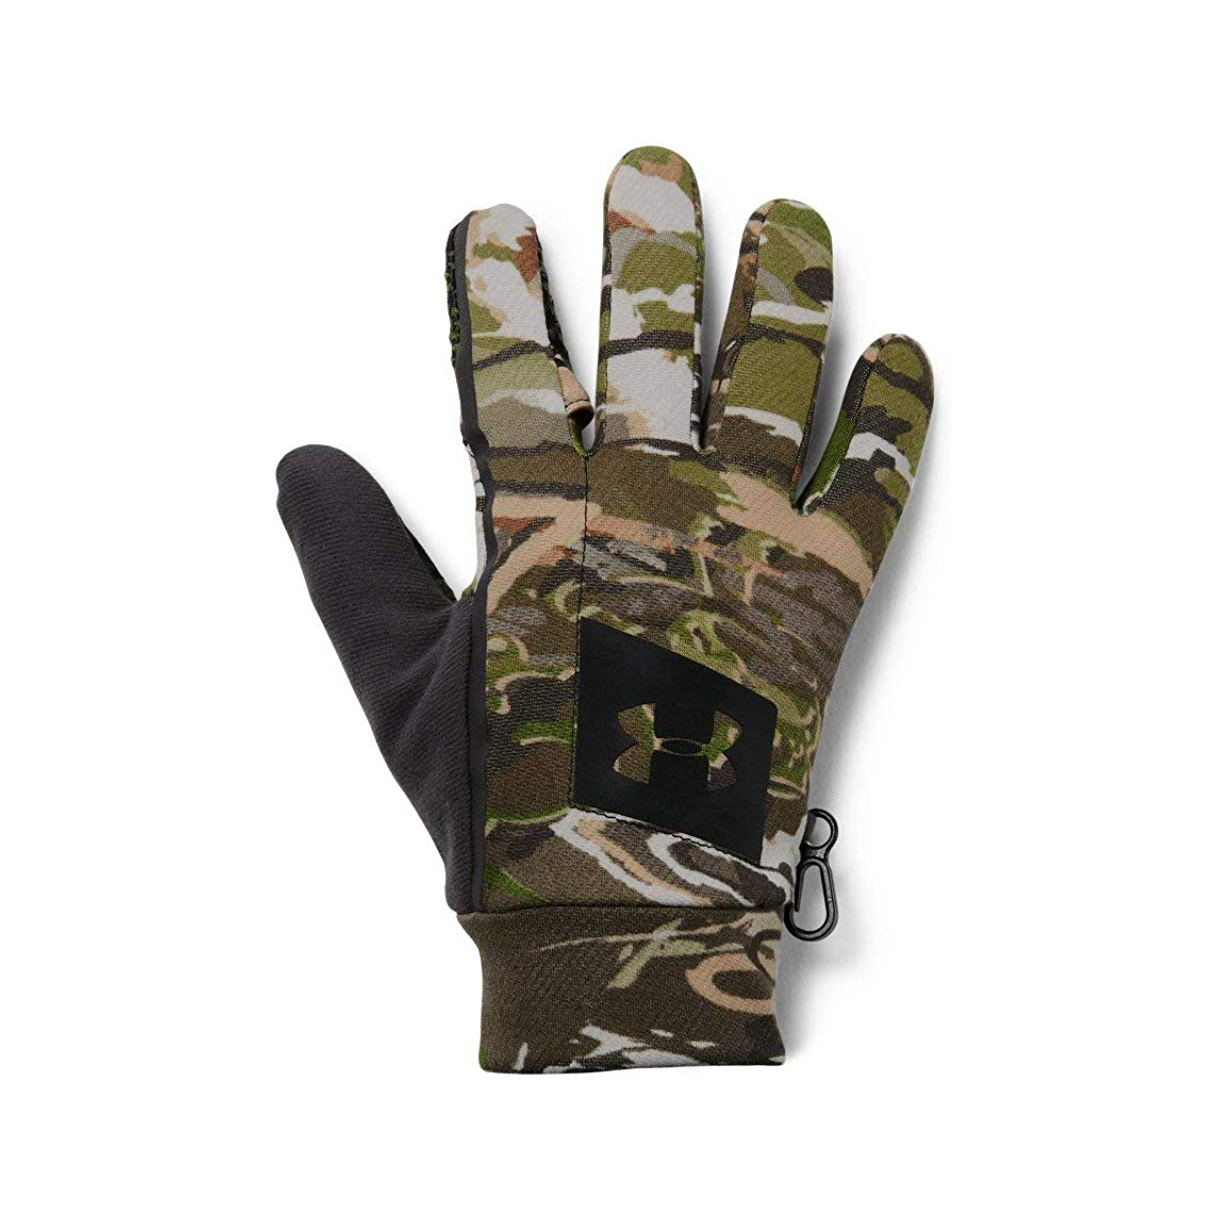 Sharkskin Palm Tourchrite Index Finger. Hunting Gloves Fleece lined Neoprene 